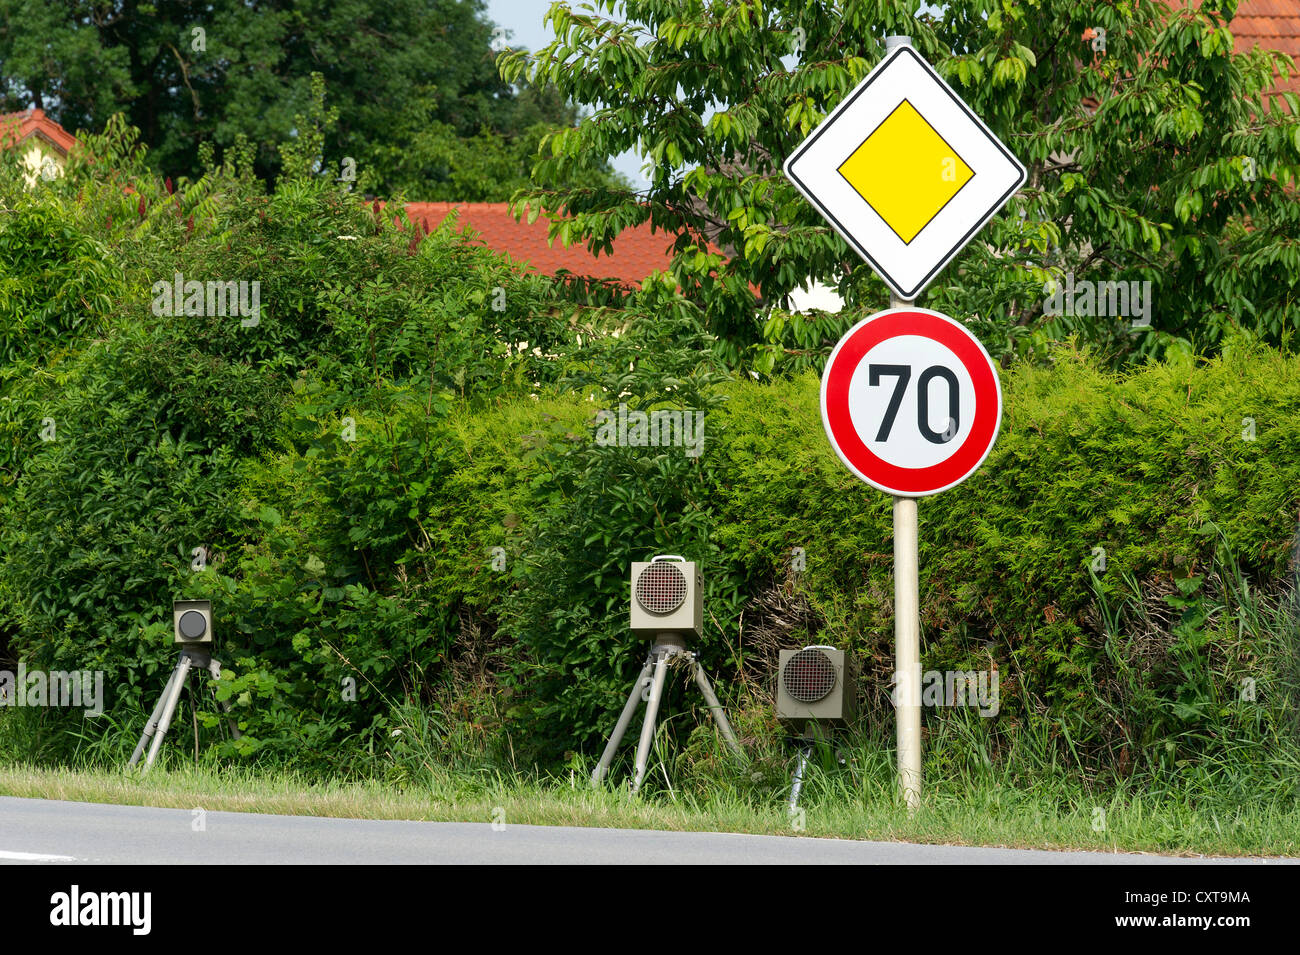 La velocità e la fotocamera a infrarossi unità flash, velocità trappola, mobile unità radar per misurare la velocità, Landau, Baviera, PublicGround Foto Stock